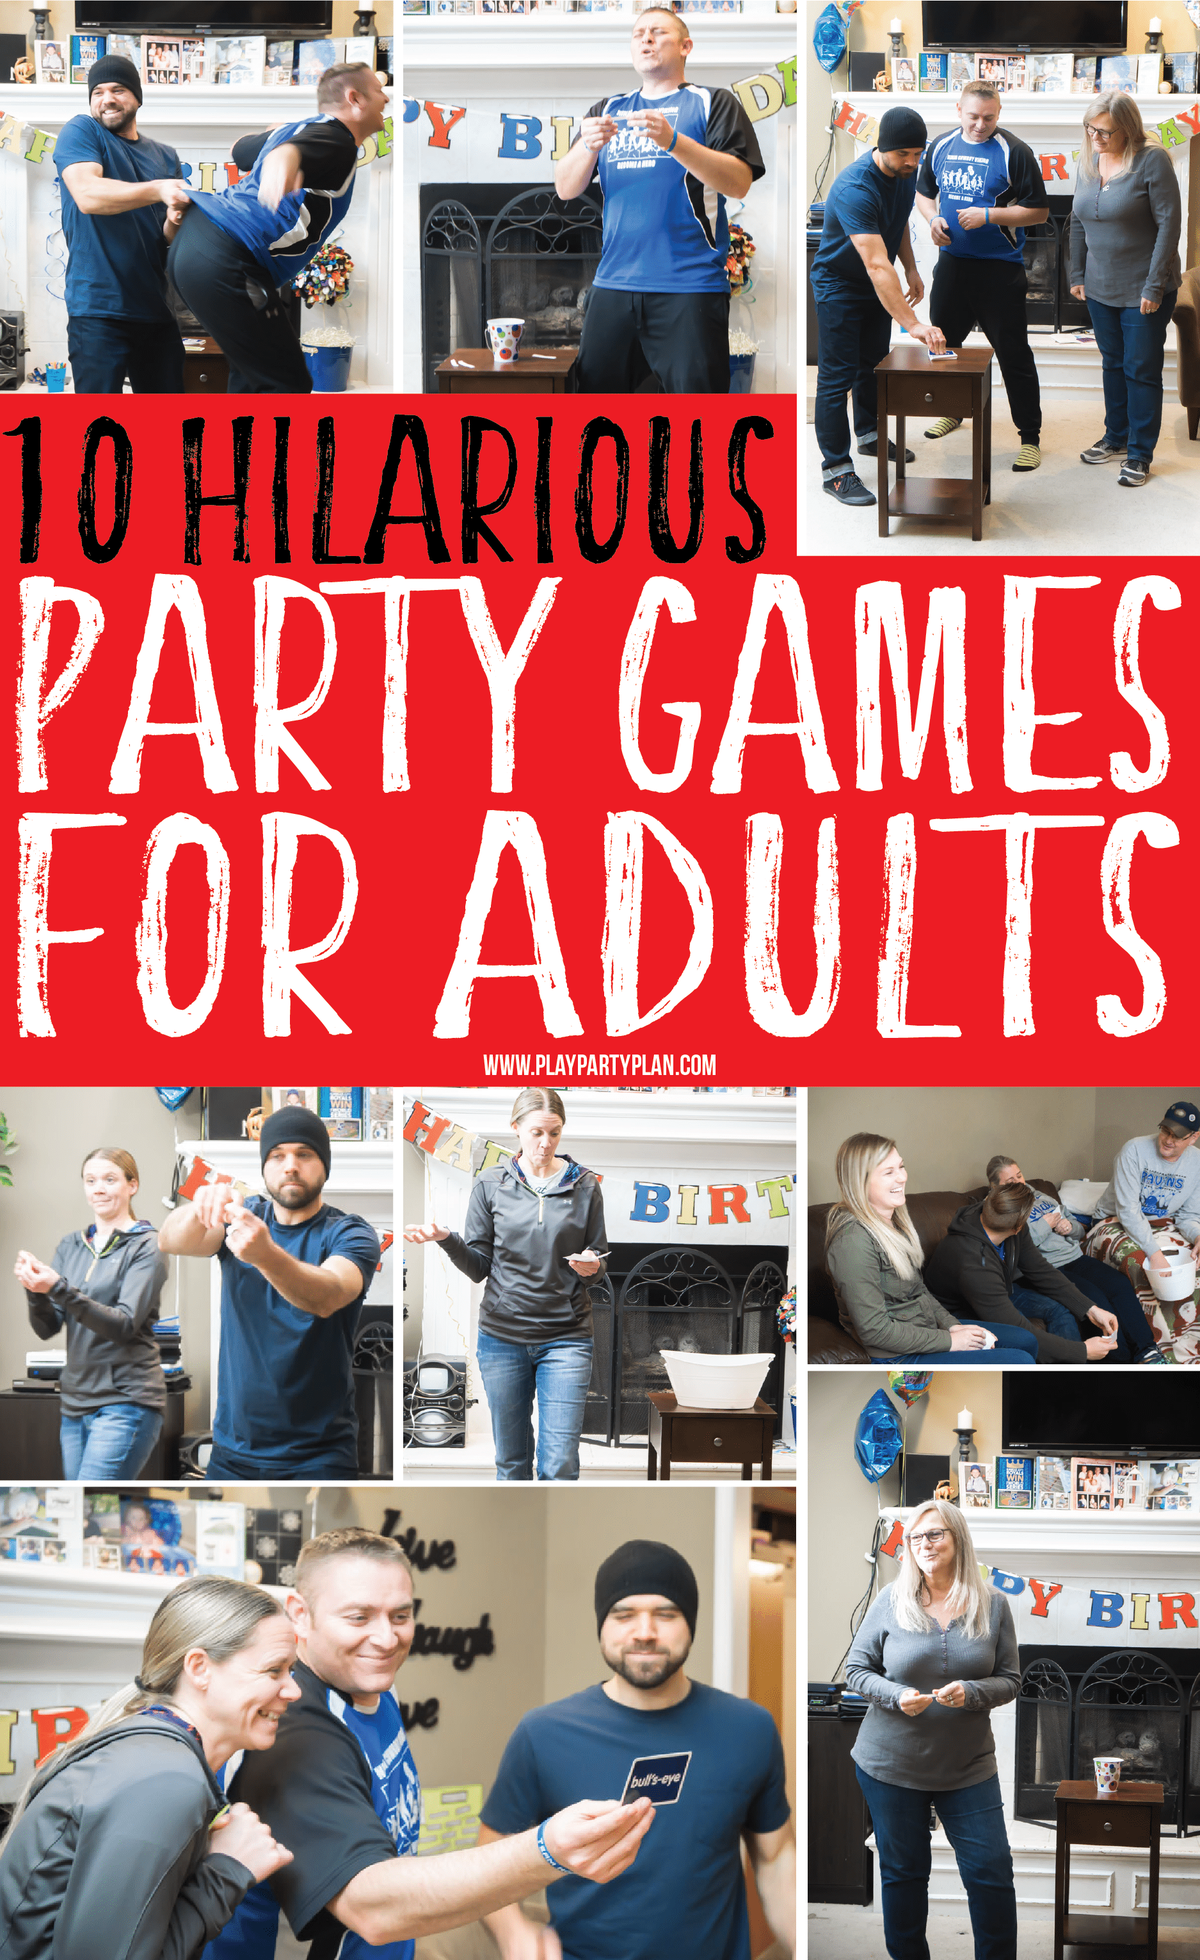 10 veselých společenských her pro dospělé, které by skvěle fungovaly i pro dospívající nebo pro skupiny! Zahrajte si uvnitř nebo venku na rodinném setkání nebo narozeninové párty! To nevadí, jsou vtipné v každém případě! A co je nejlepší, není nutné pití ani alkohol!